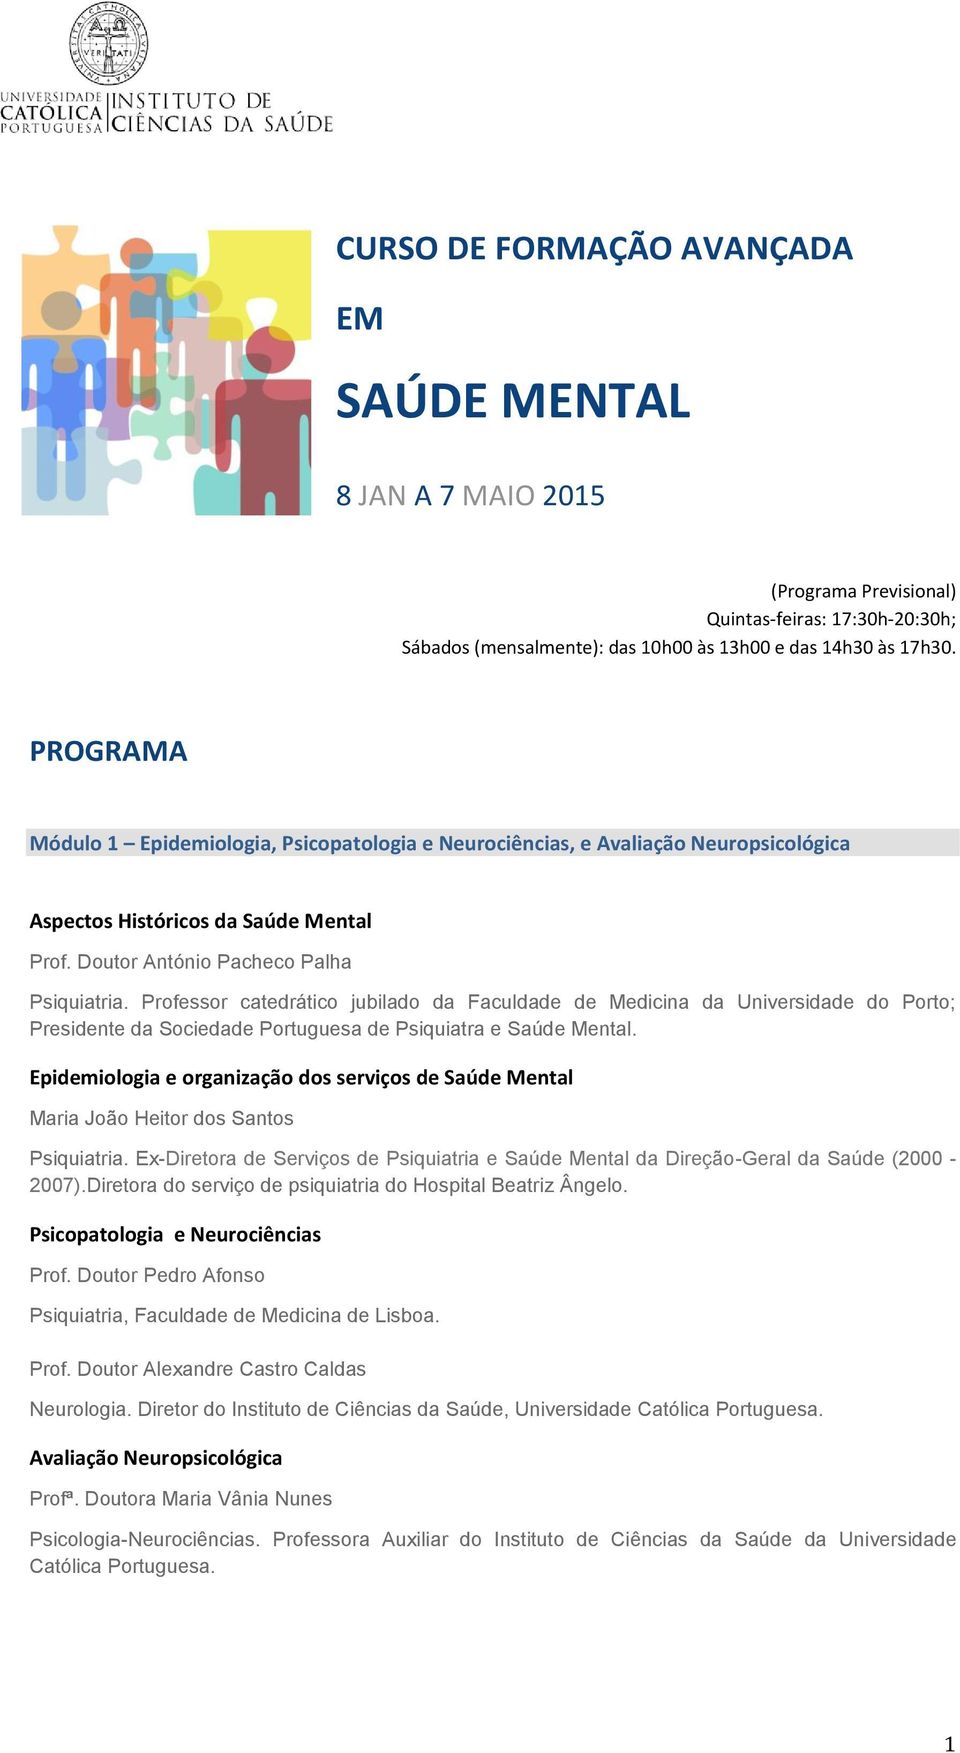 Professor catedrático jubilado da Faculdade de Medicina da Universidade do Porto; Presidente da Sociedade Portuguesa de Psiquiatra e Saúde Mental.